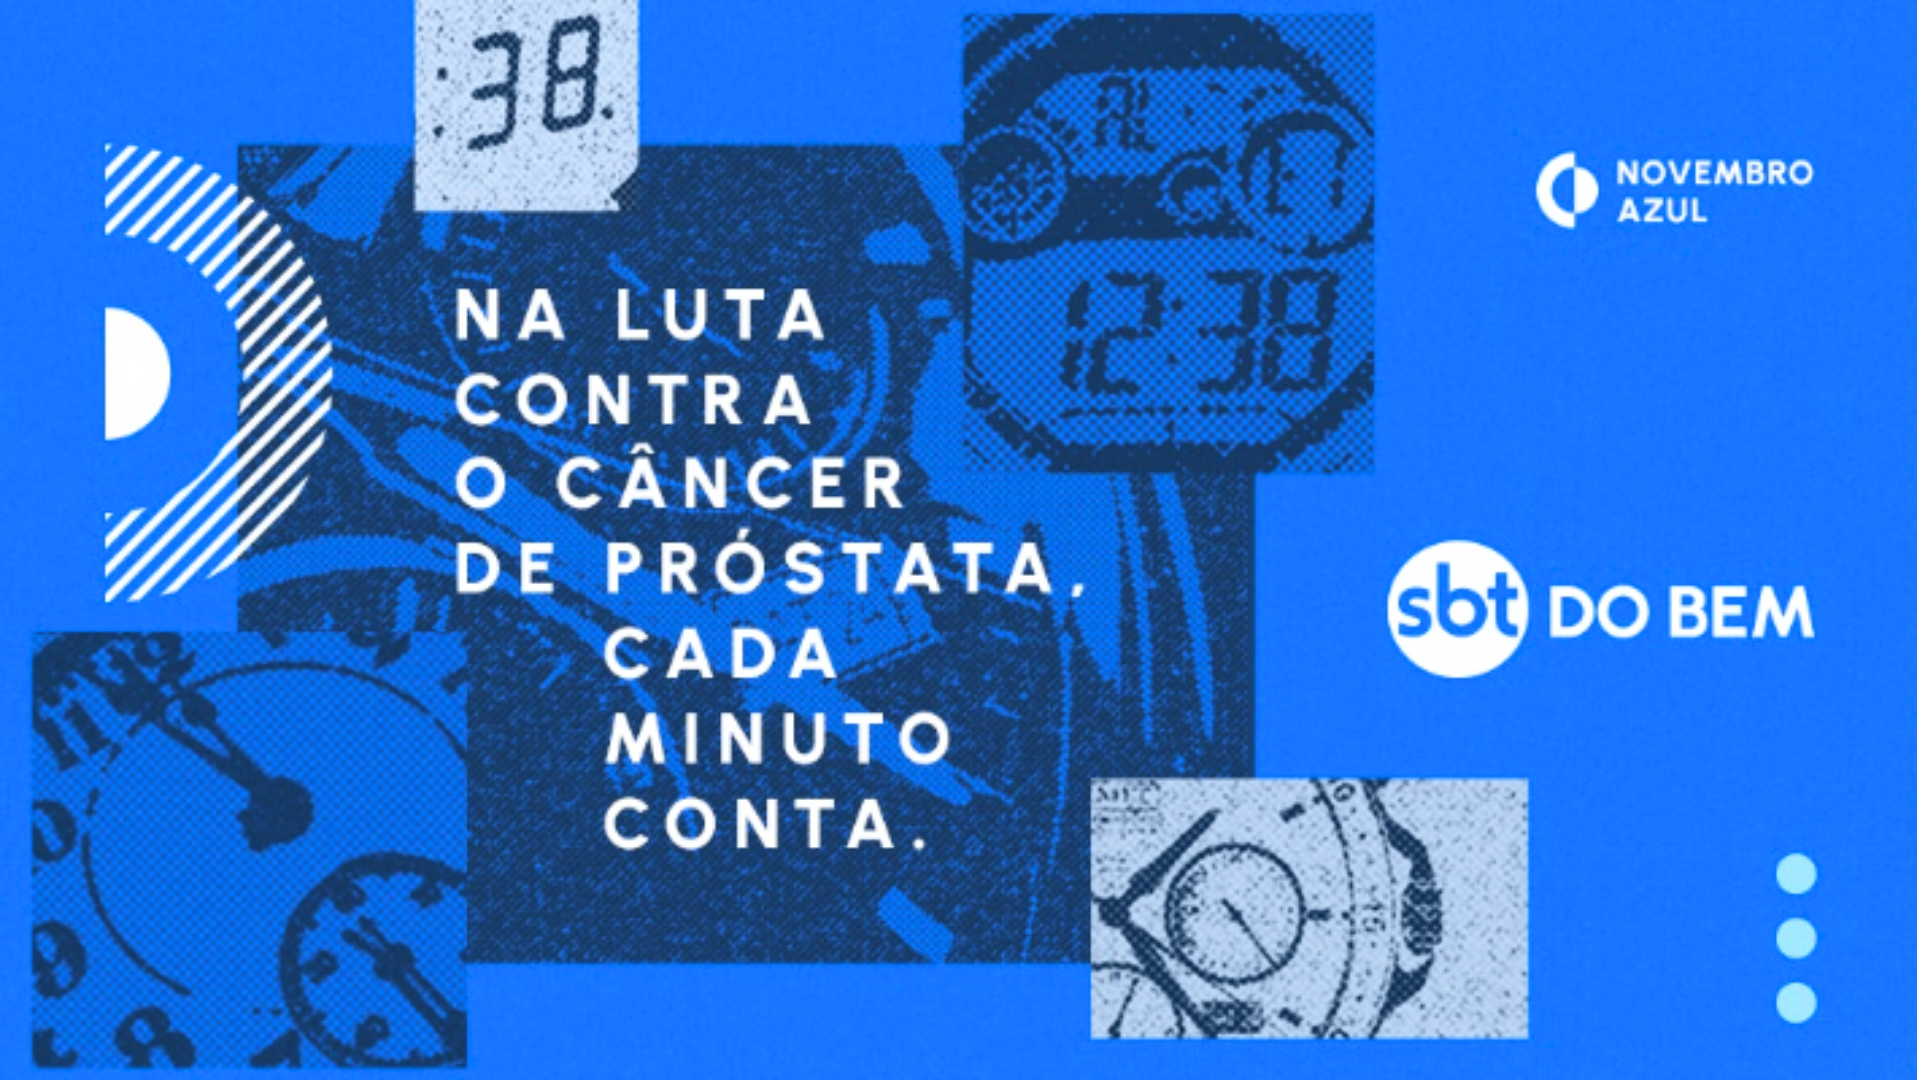 SBT do Bem lança 'Break da Prevenção' em apoio ao Novembro Azul